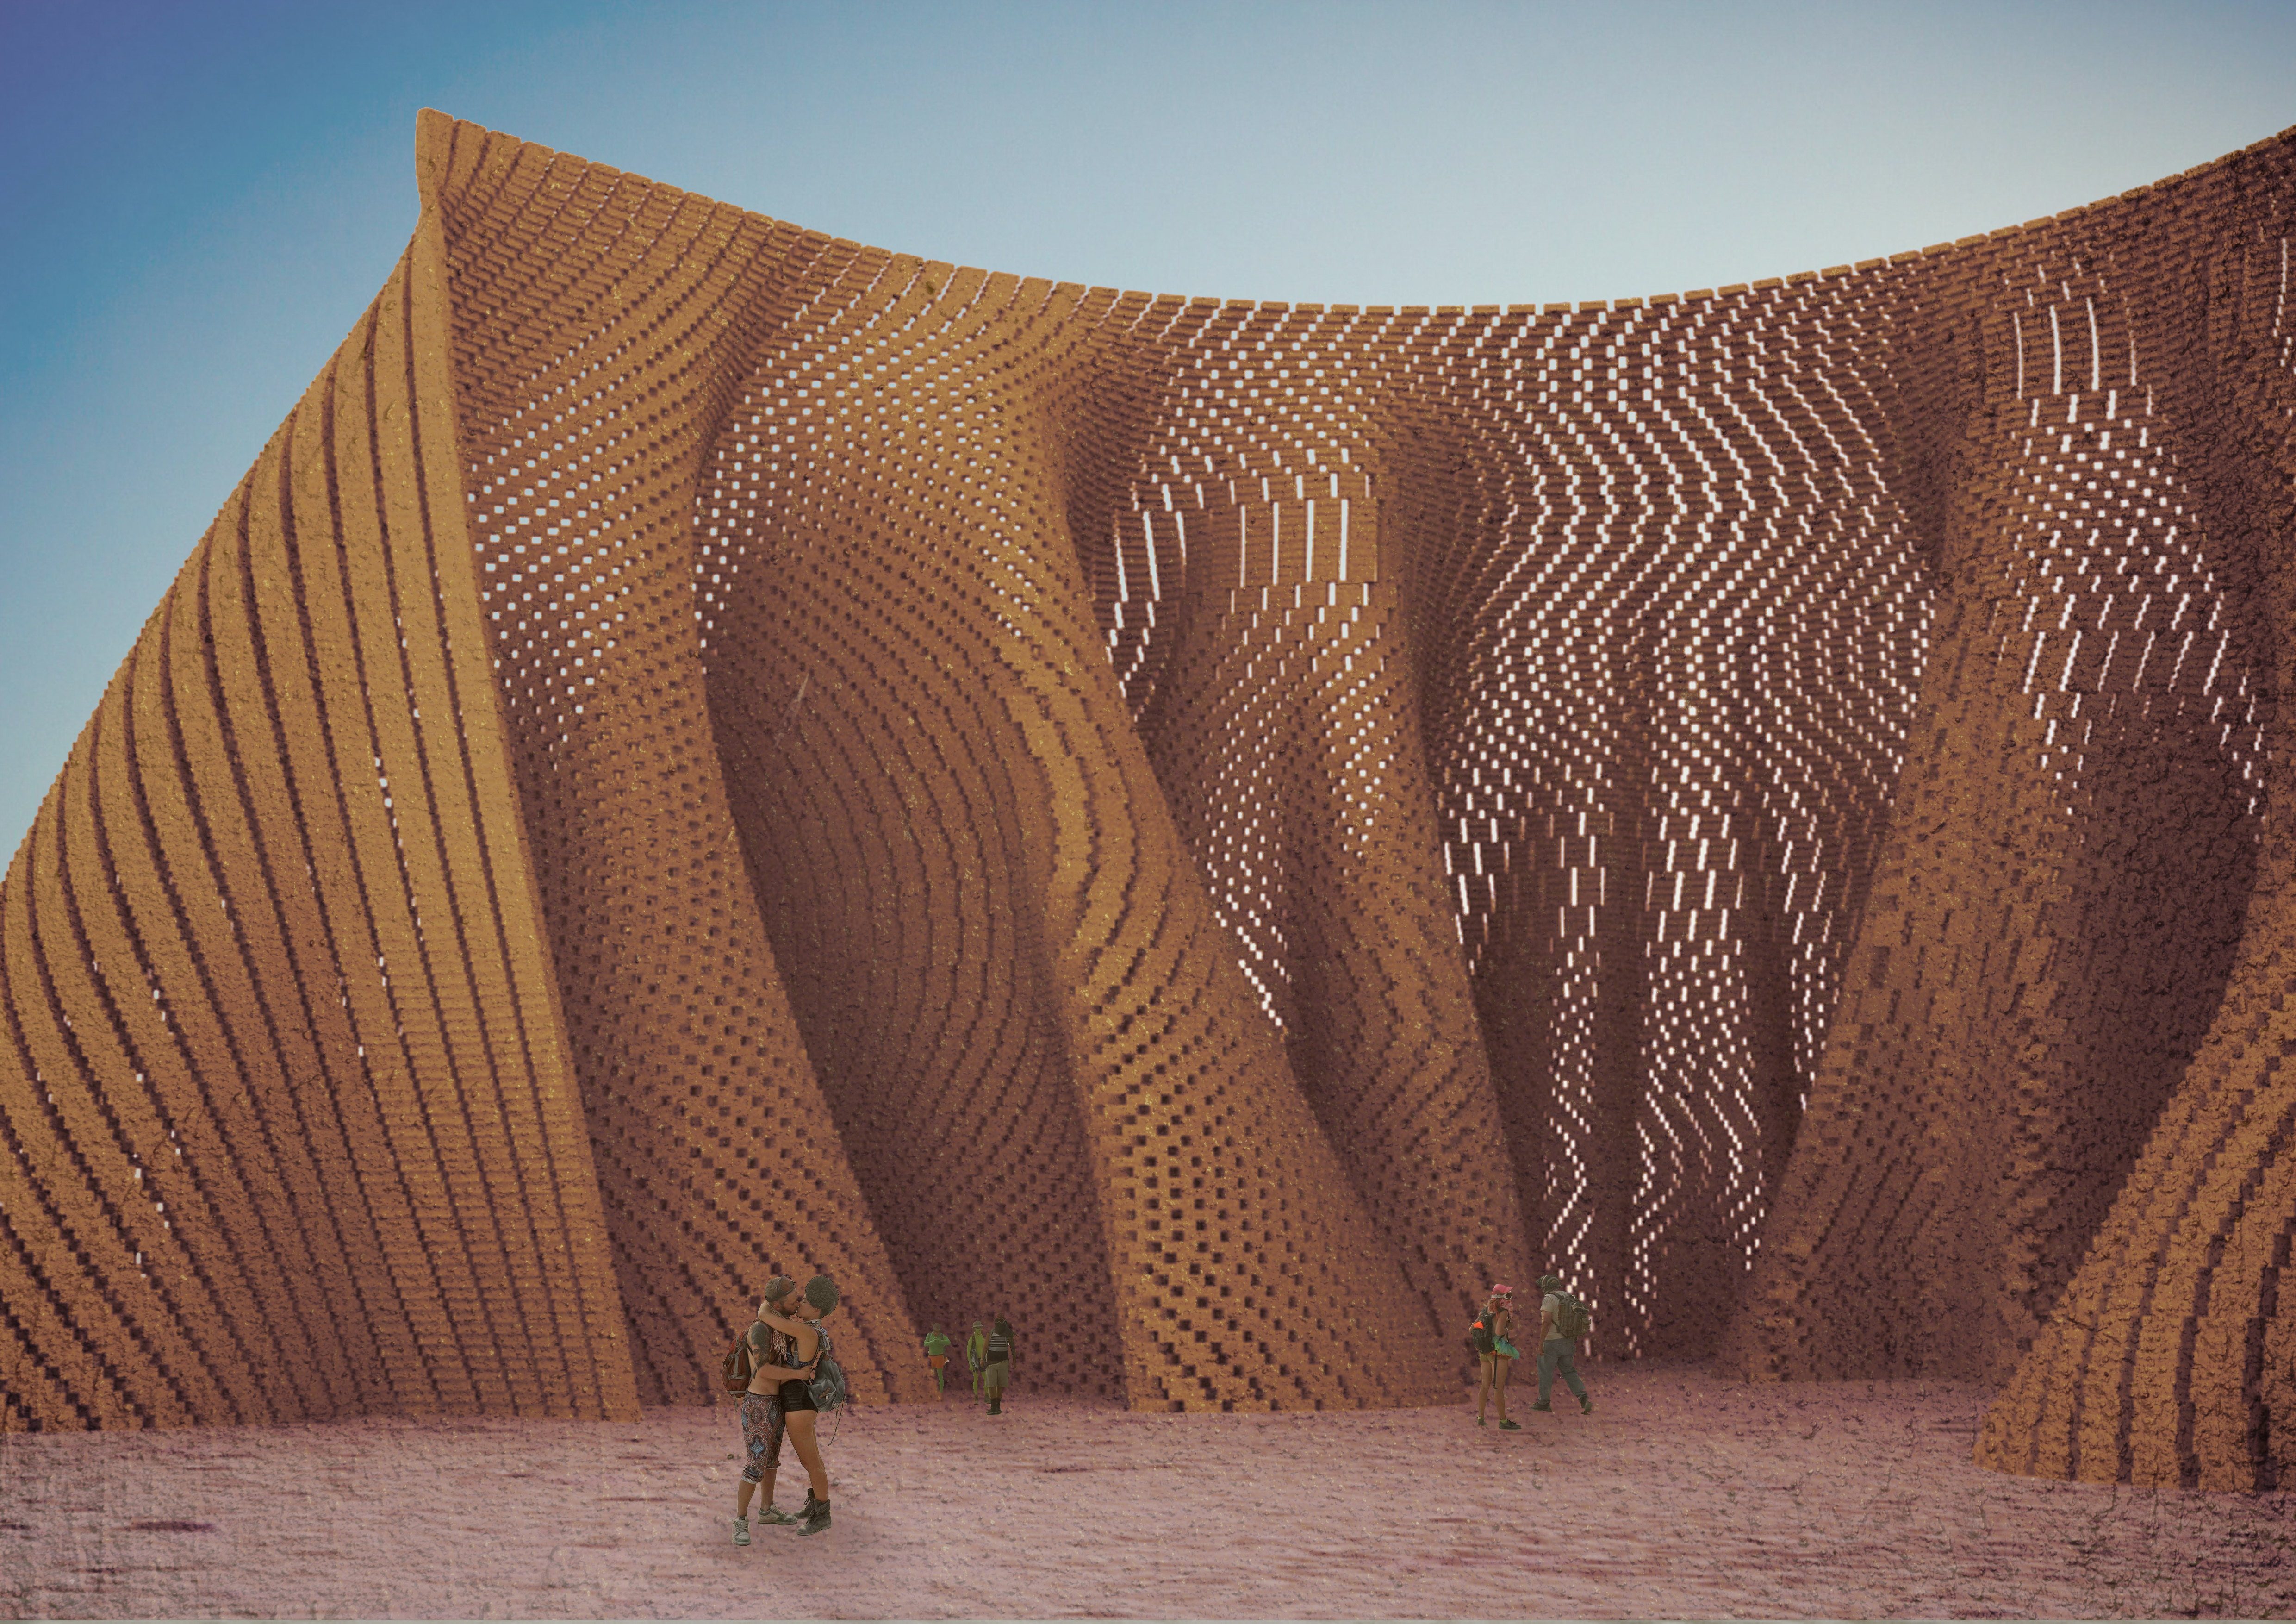 171108 - Burning Man Timber Brick Laying Proposal View 1.jpg